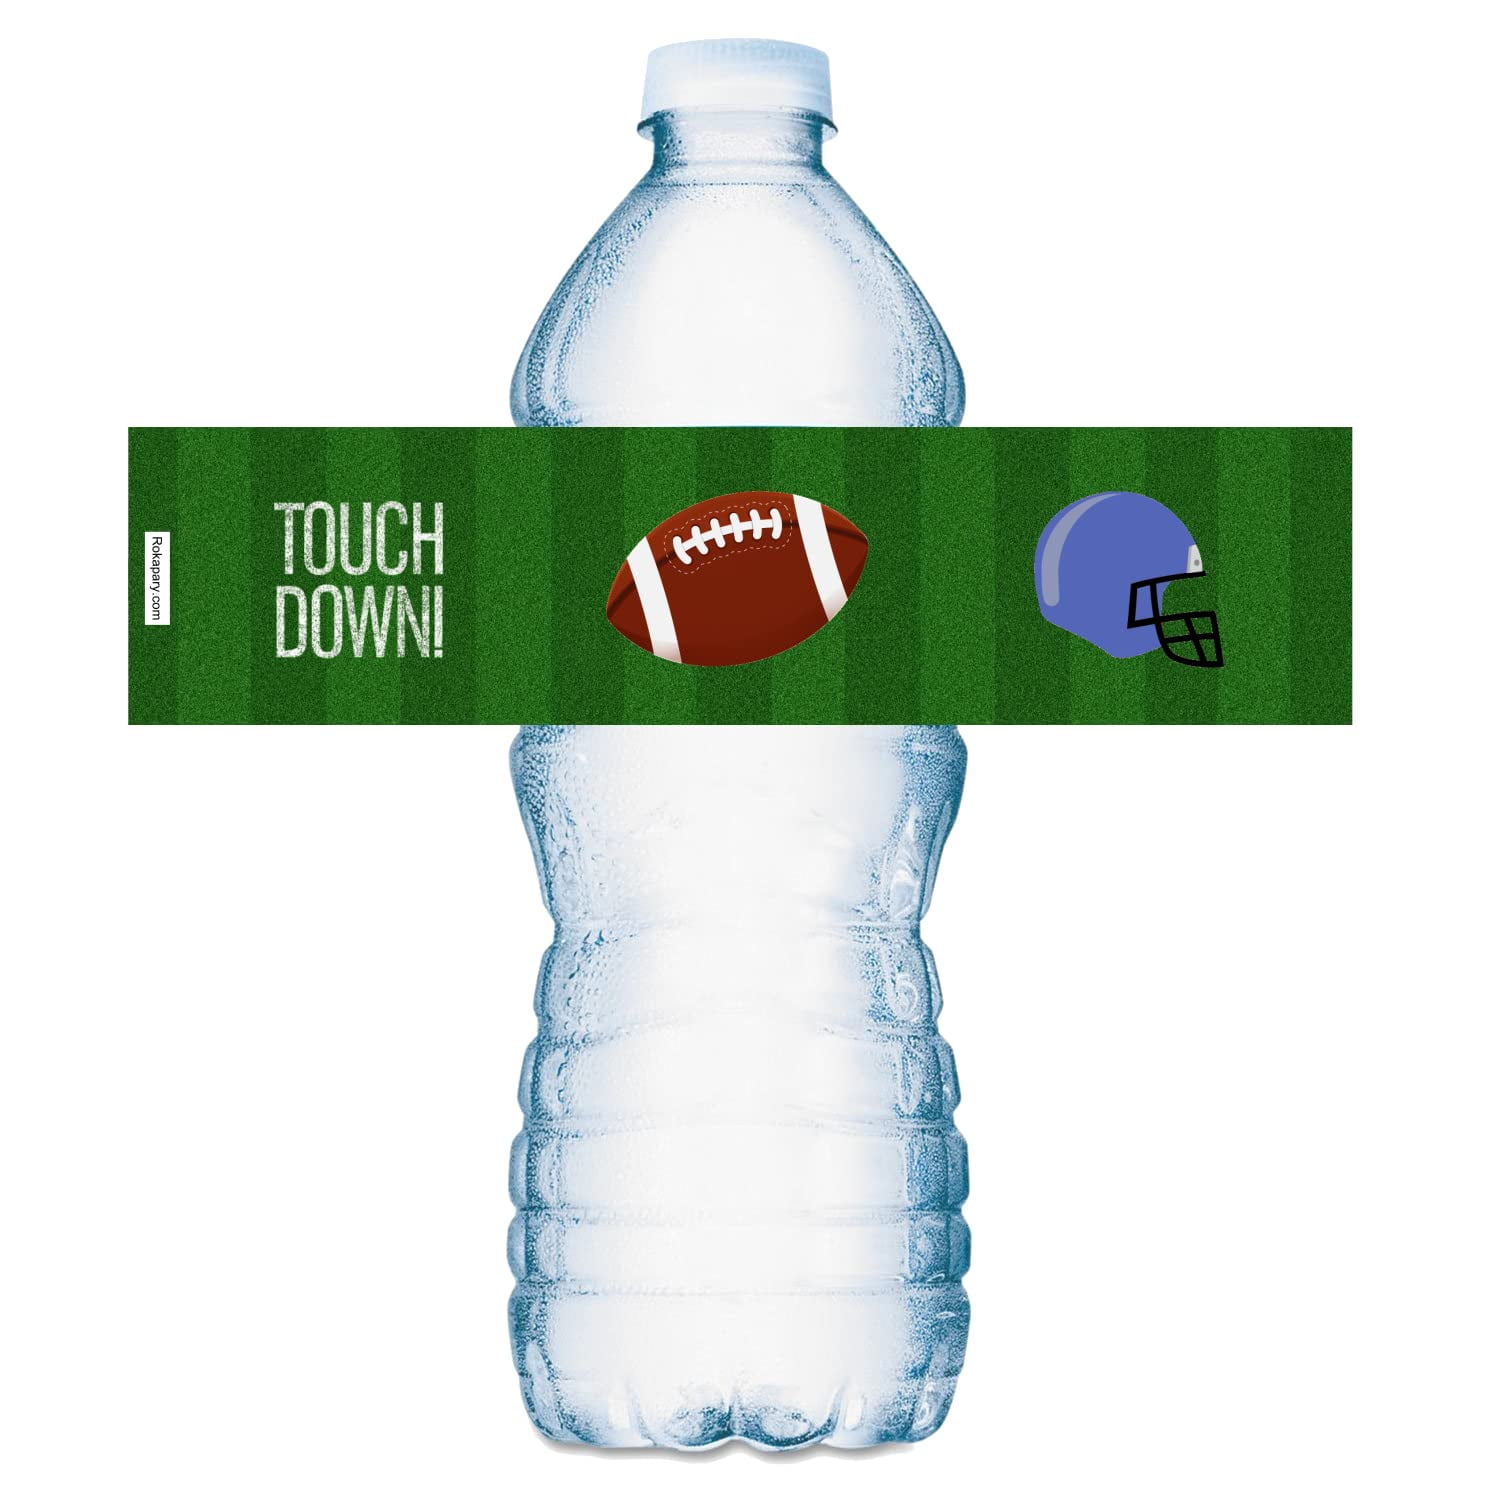 20-sports-football-water-bottle-labels-waterproof-water-bottle